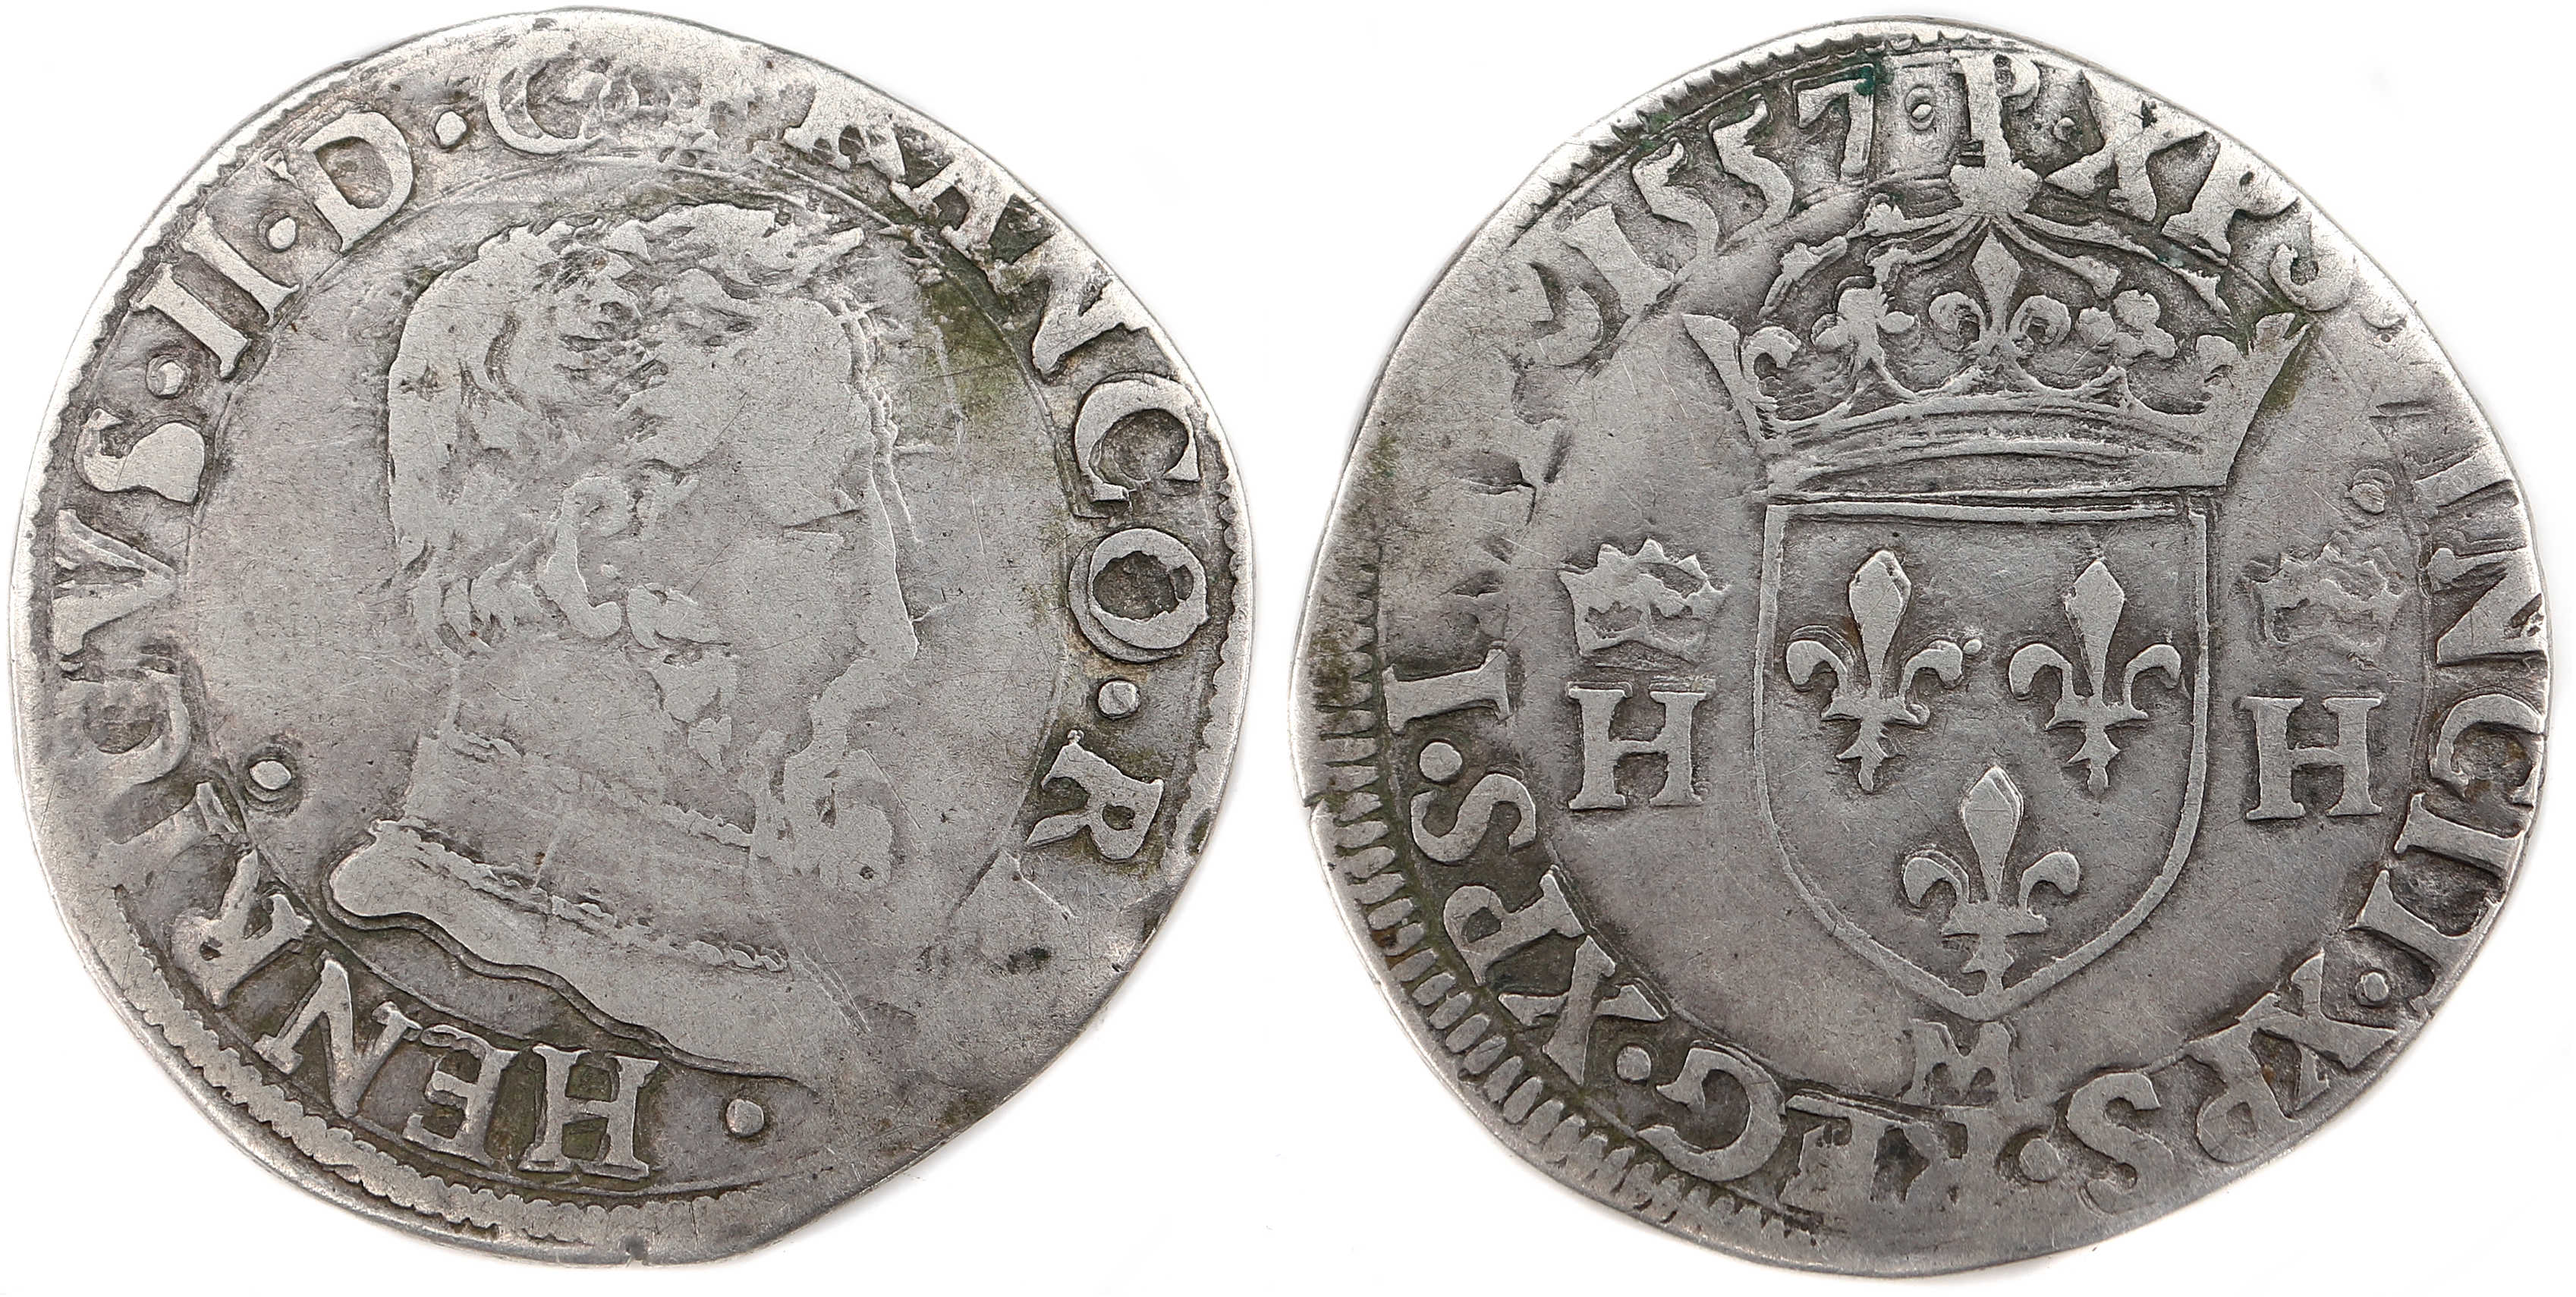 Monnaies royaes francaises HENRI II DEMI TESTON 1557 TOULOUSE